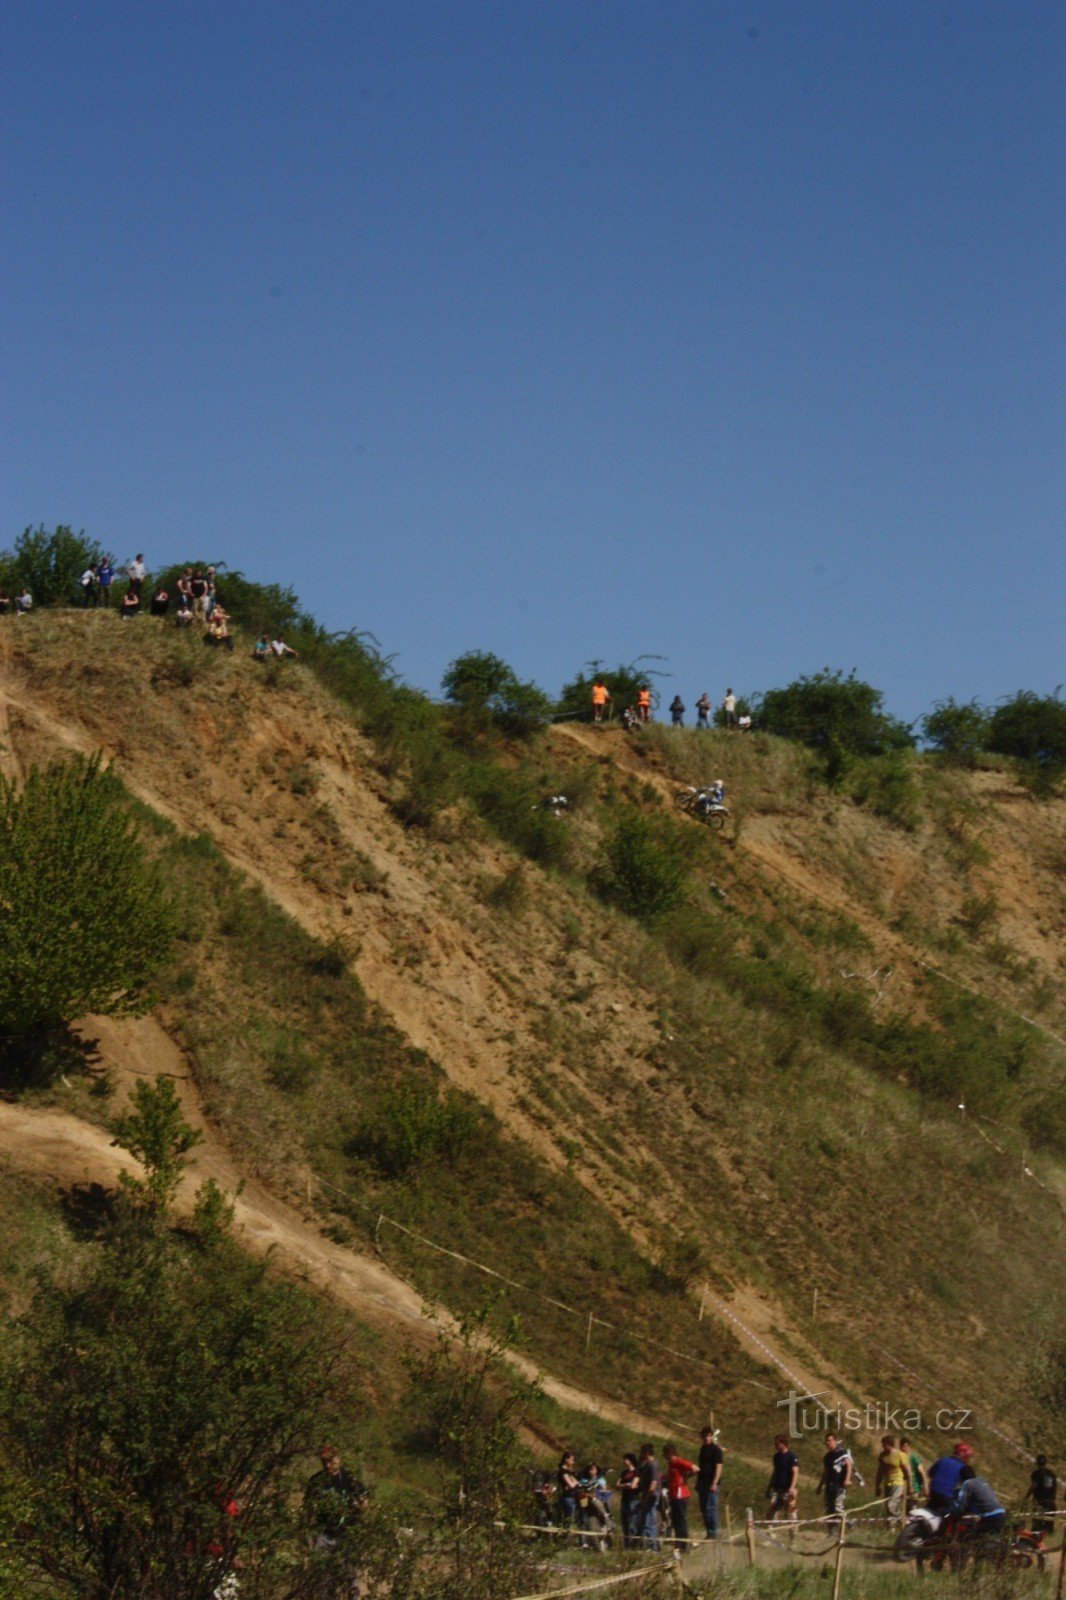 Poço de areia Ondratice perto de Brodek perto de Prostějov